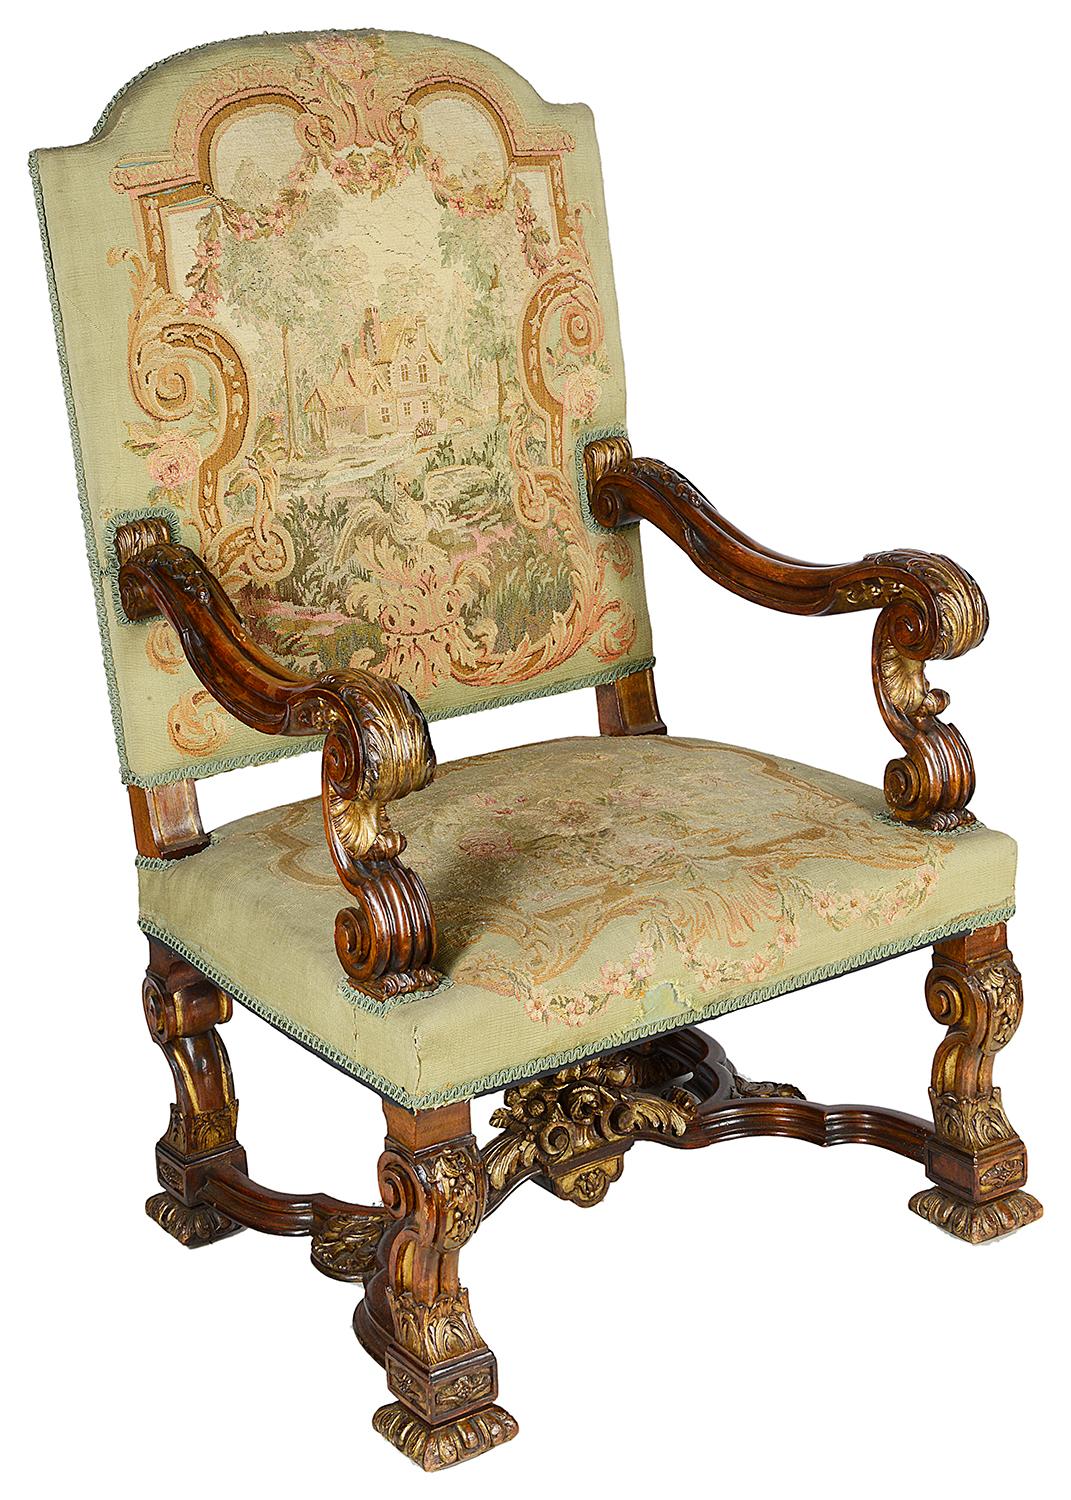 Très impressionnante paire de fauteuils en noyer de style Louis XIV de la fin du XIXe siècle. Chaque fauteuil est recouvert d'une tapisserie représentant des maisons de campagne, les accoudoirs et les pieds sont sculptés en volutes et ornés d'une